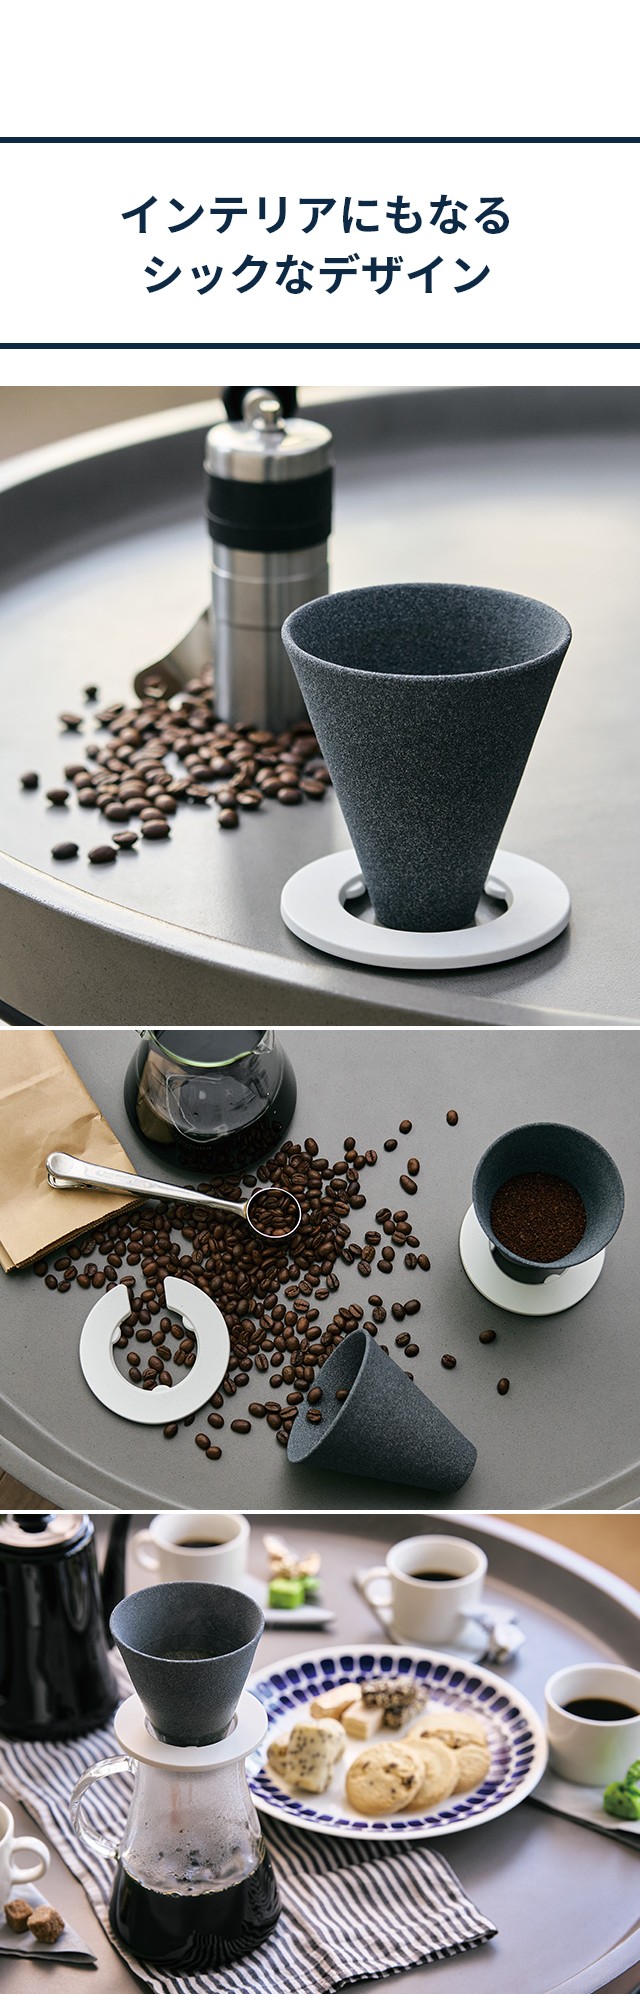 cerapotta (セラポッタ) セラミックコーヒーフィルター (ceramic coffee filter) DP-010